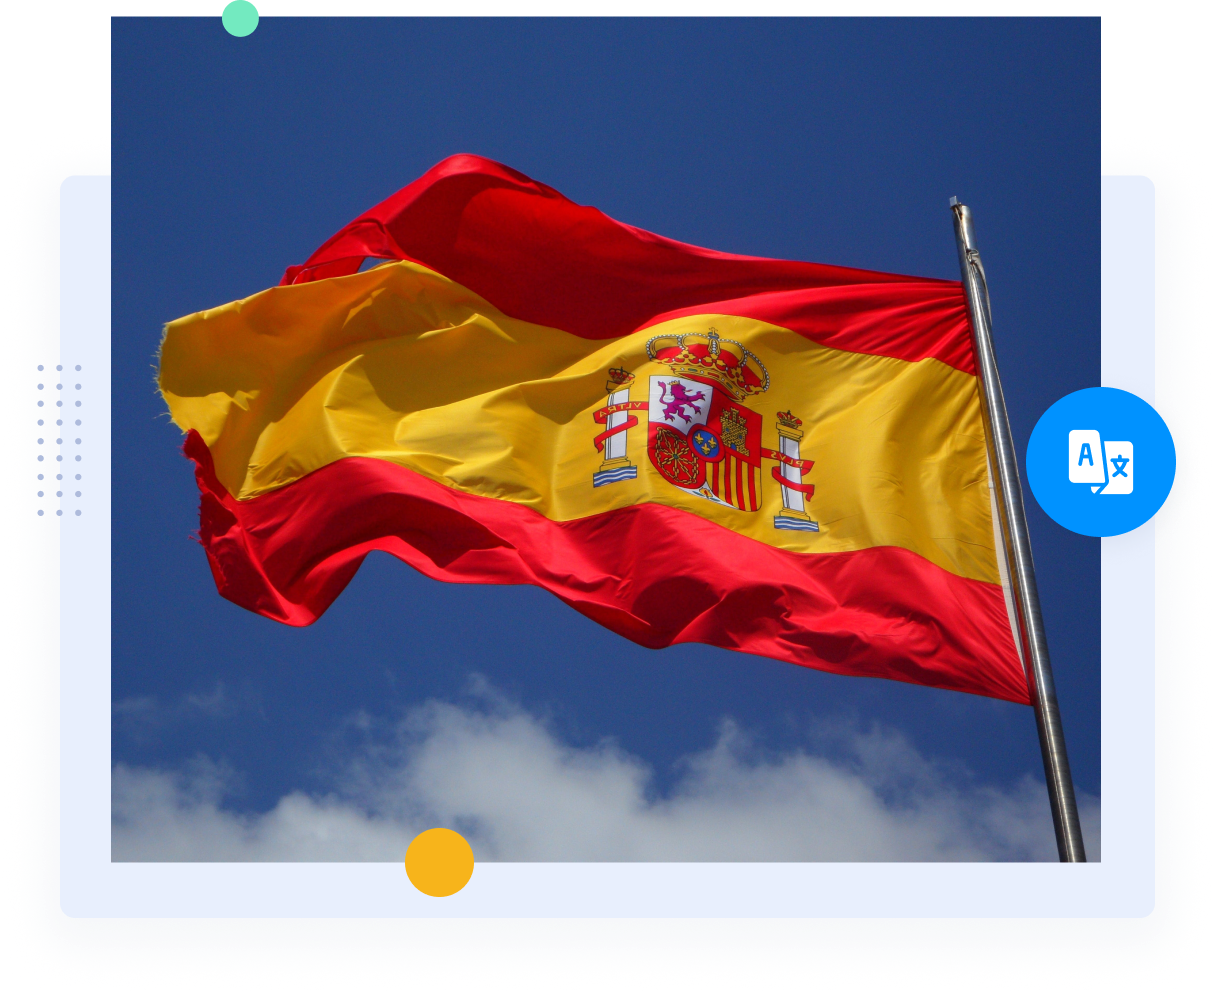 La bandiera rossa e gialla della Spagna rappresenta i traduttori professionisti spagnoli e i servizi di traduzione.